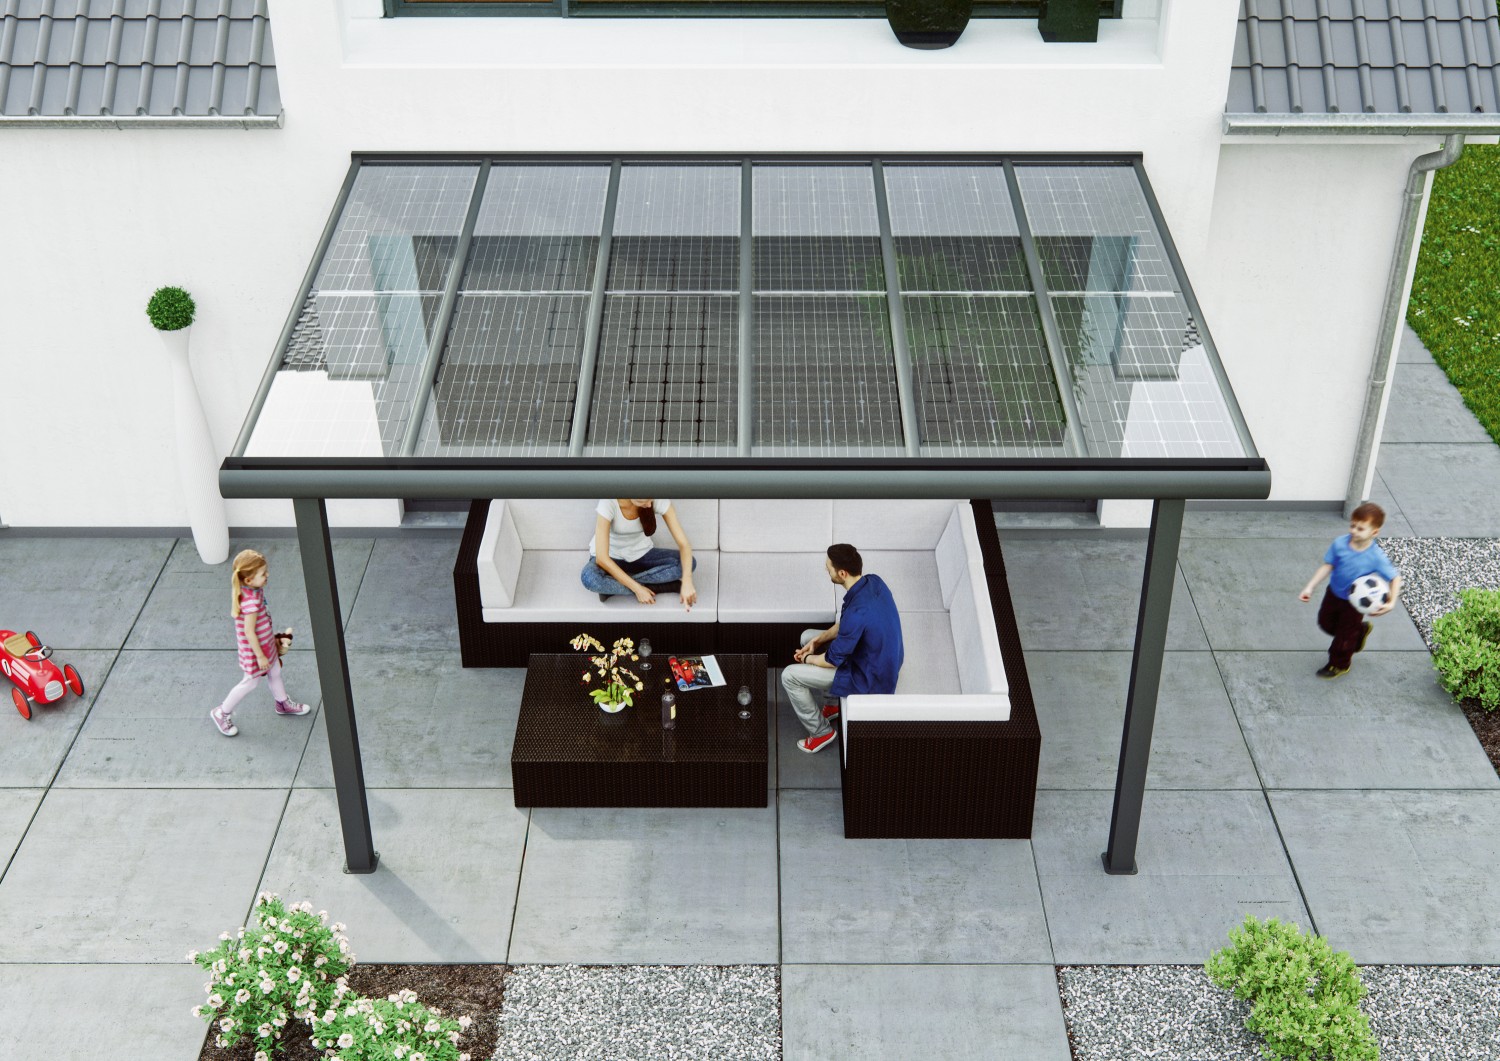 Rund ums Haus Solarmodule von „Solarcarporte.de“ auf Terrasse und Carport sparen Strom und Kosten - News, Bild 1